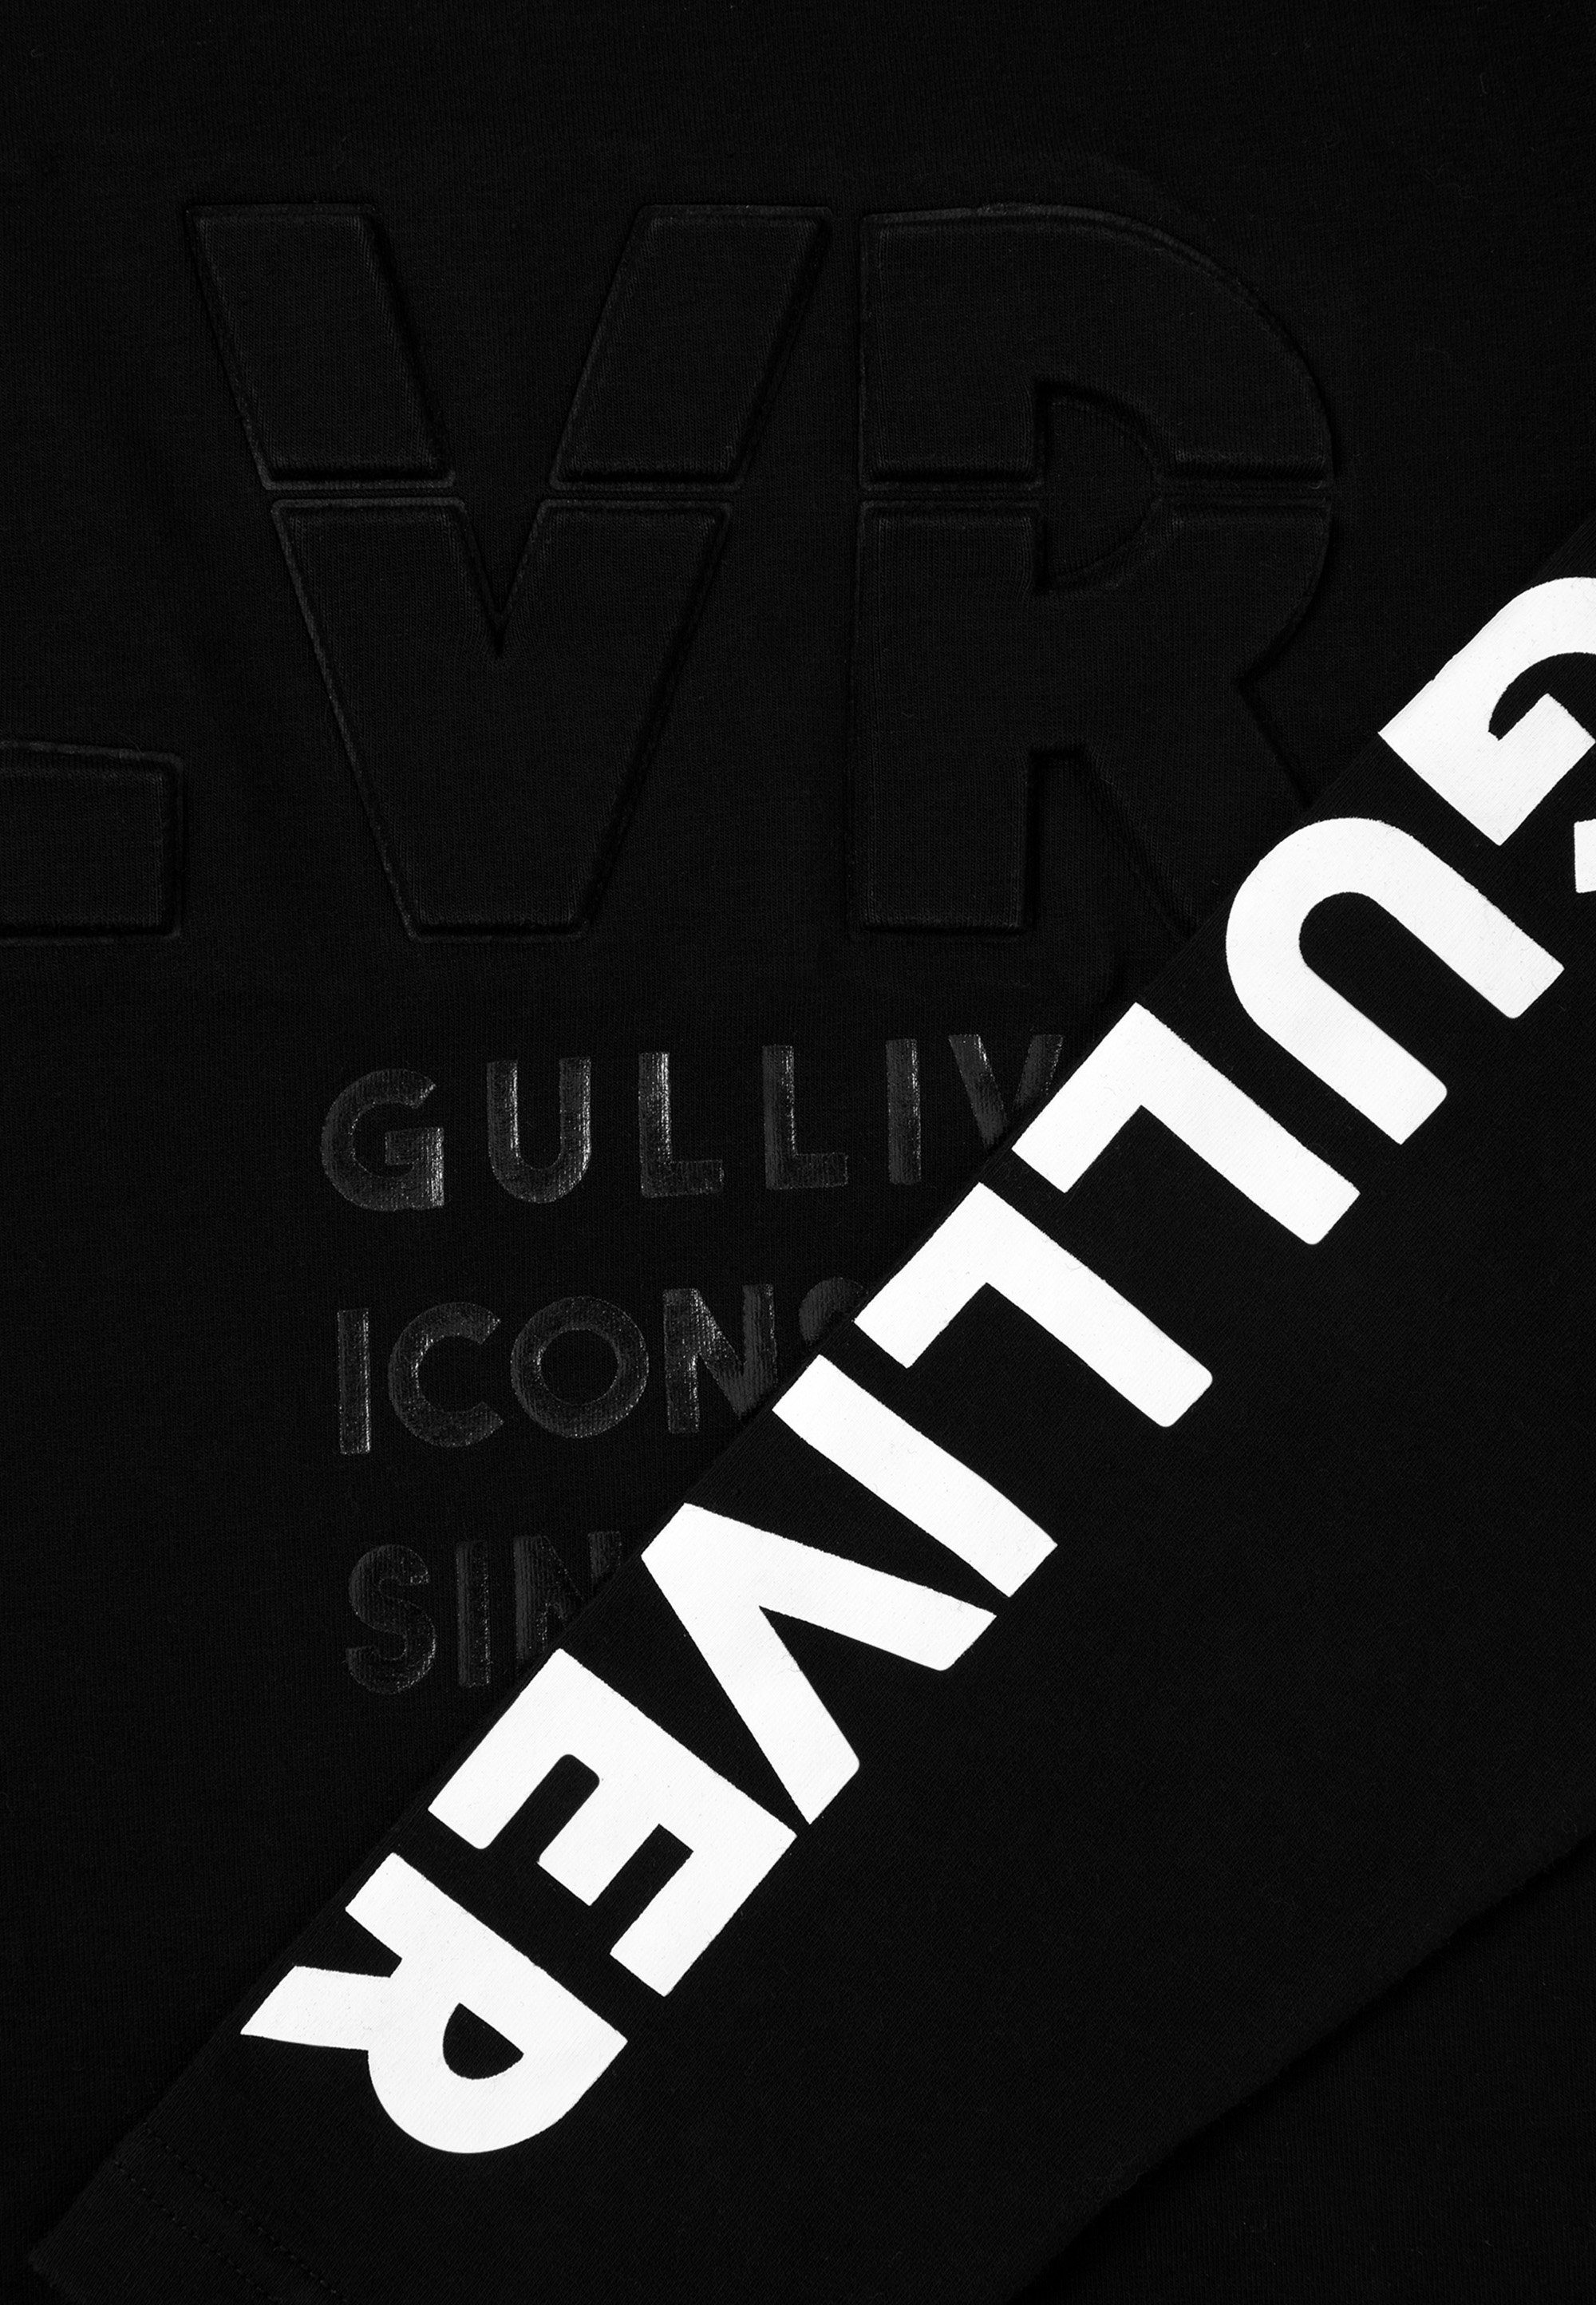 coolen Gulliver mit Logoprints Sweatshirt